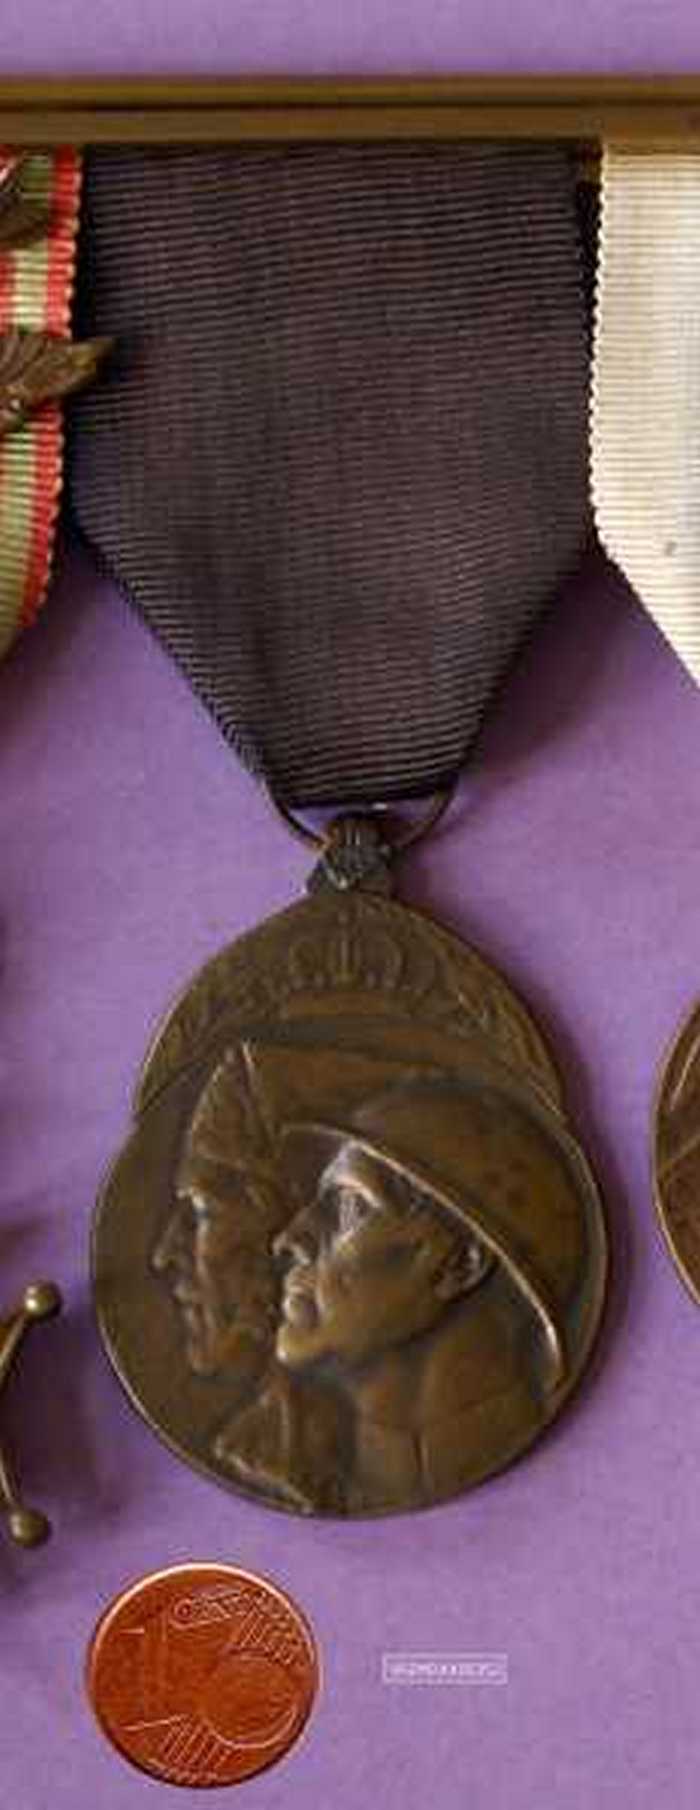 Medaille van de Vrijwillige Strijder 1914-1918